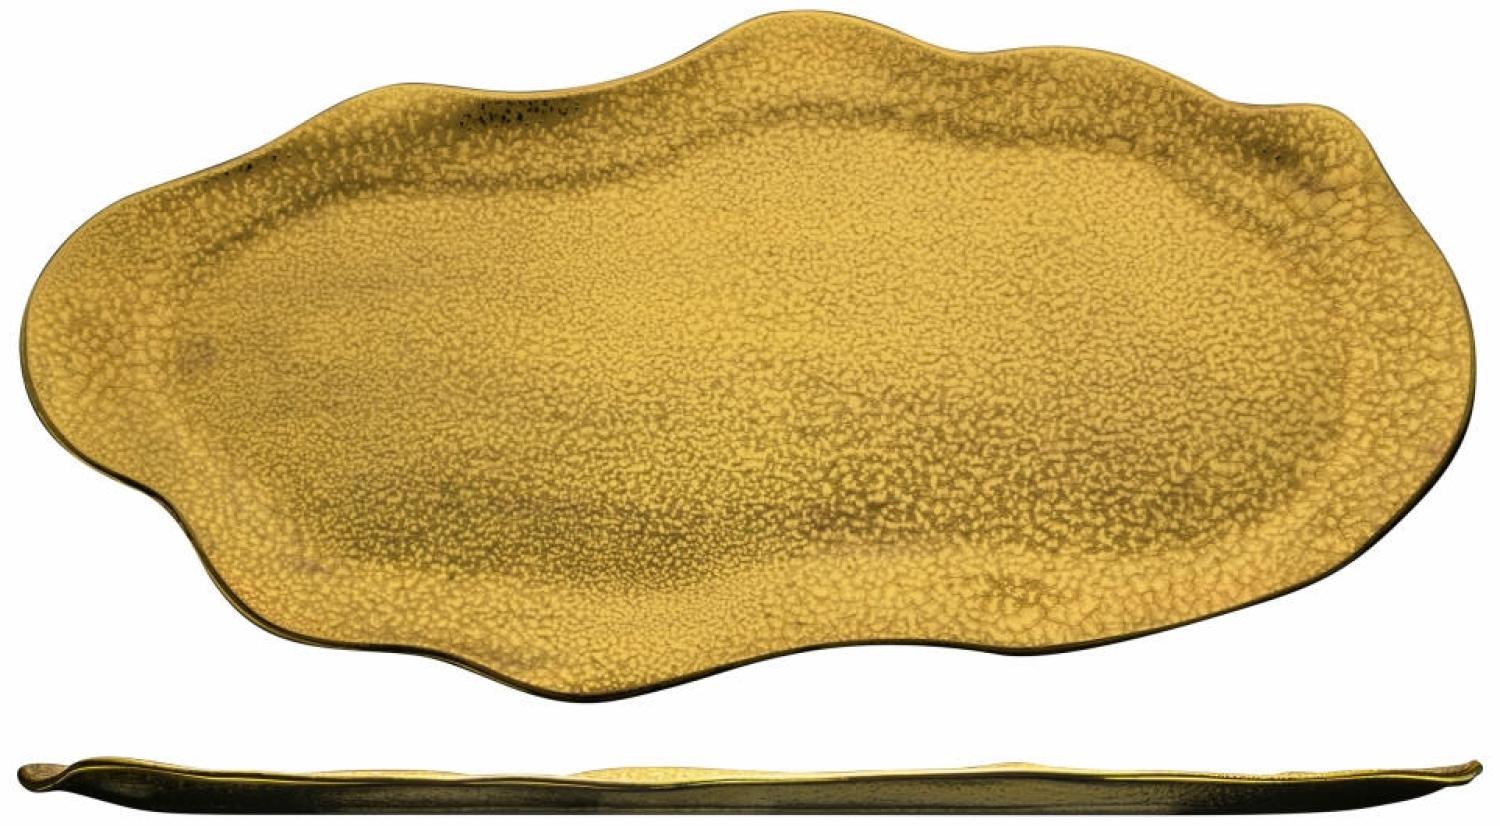 Eisch Platte Gold Rush, Servierplatte, Servierteller, Kristallglas, Gold, 48 x 26. 5 cm, 74330848 Bild 1